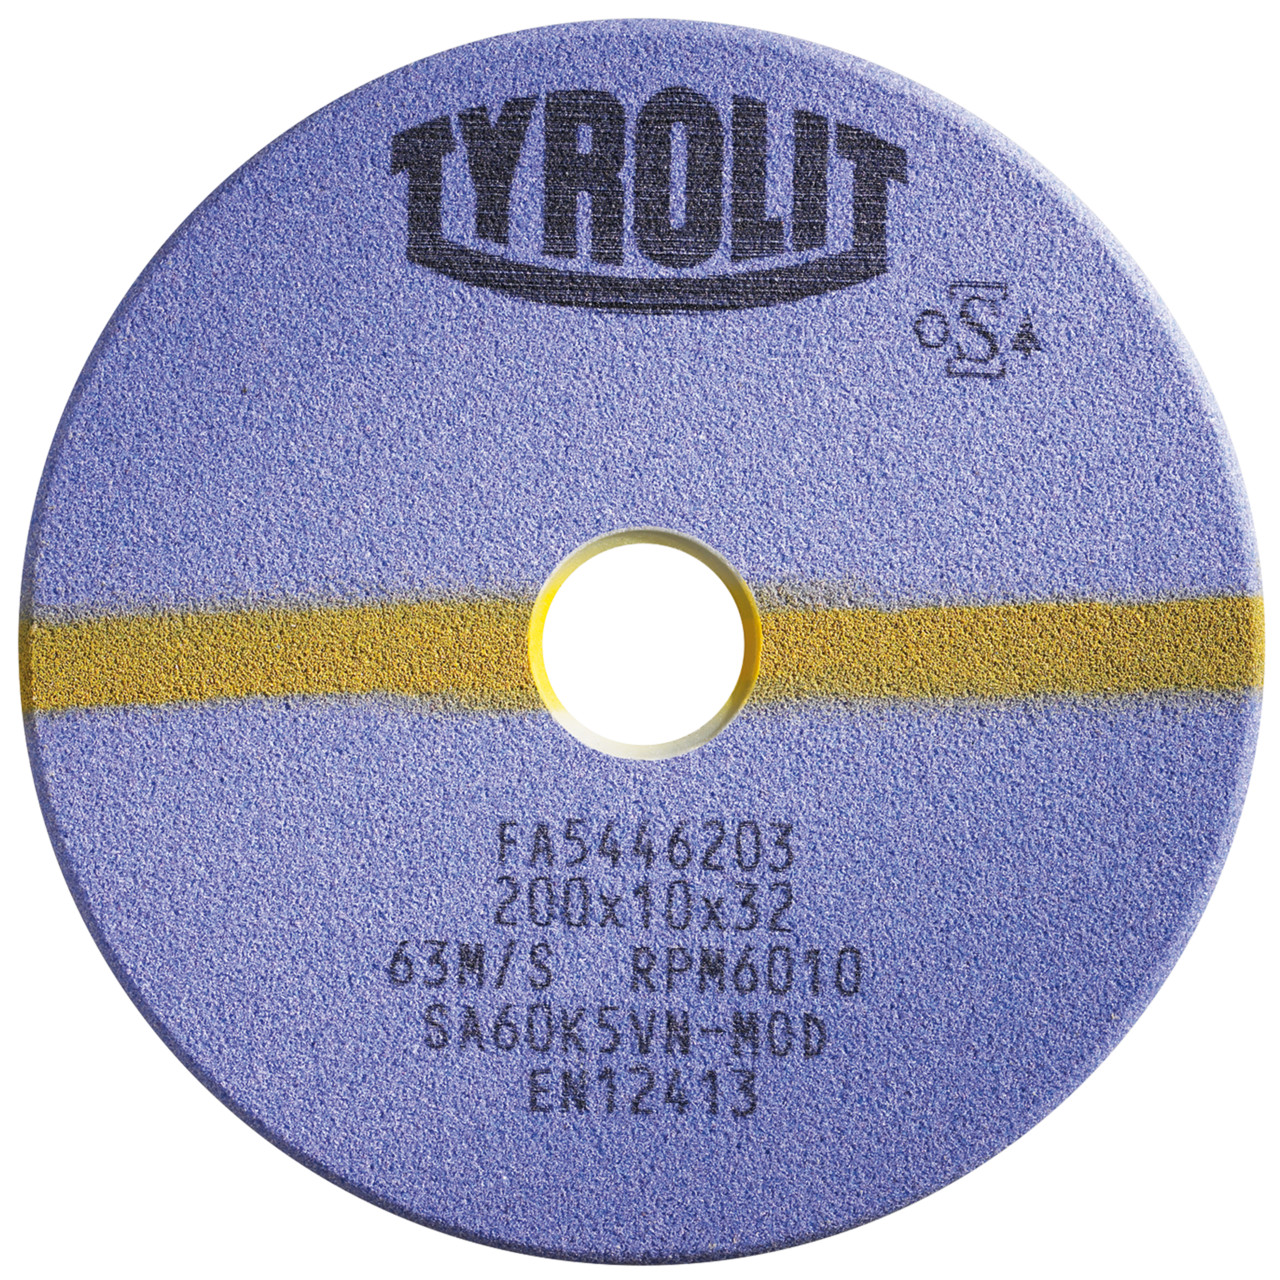 TYROLIT-hiontatyökalut automaattisille sahanteroituskoneille DxDxH 150x3x32 Pyörösahoille ja tähdellä varustetuille vannesahoille, muoto: 1C, Art. 226295